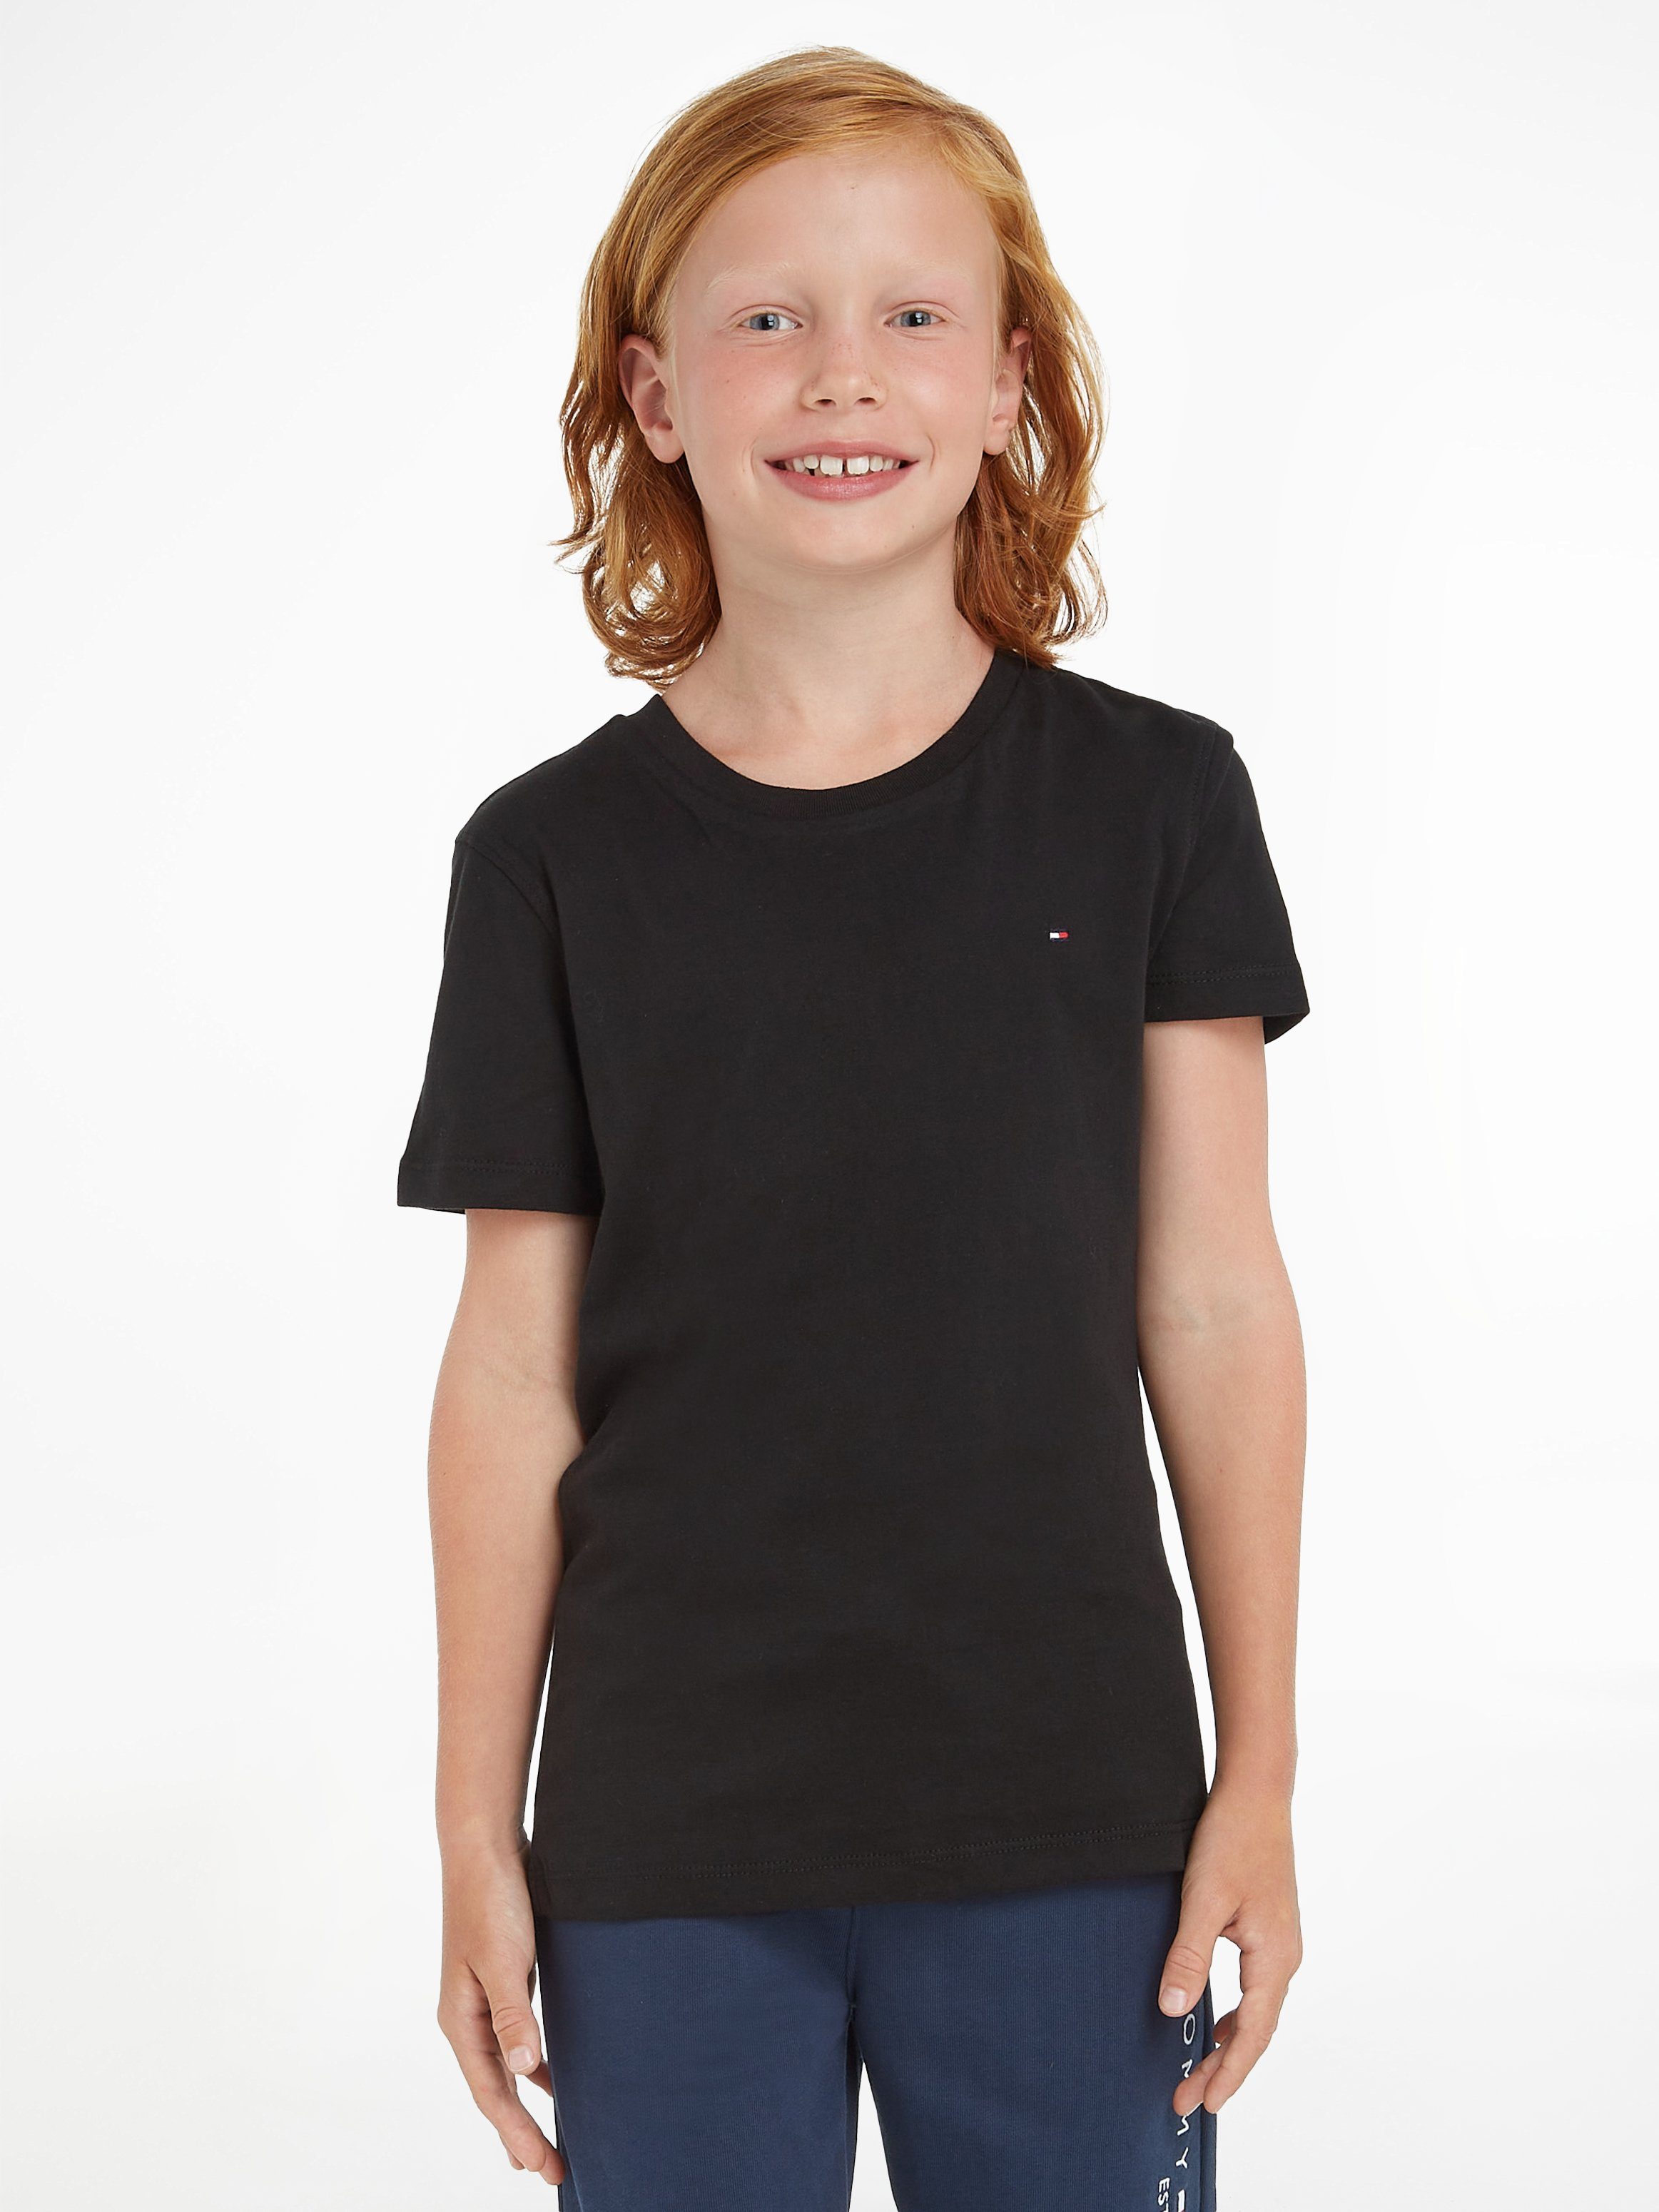 Tommy Hilfiger T-Shirt BOYS Brust CN Kids Klassisches KNIT Shirt MiniMe,für BASIC mit auf kleiner der Kinder Stickerei Jungen, Junior